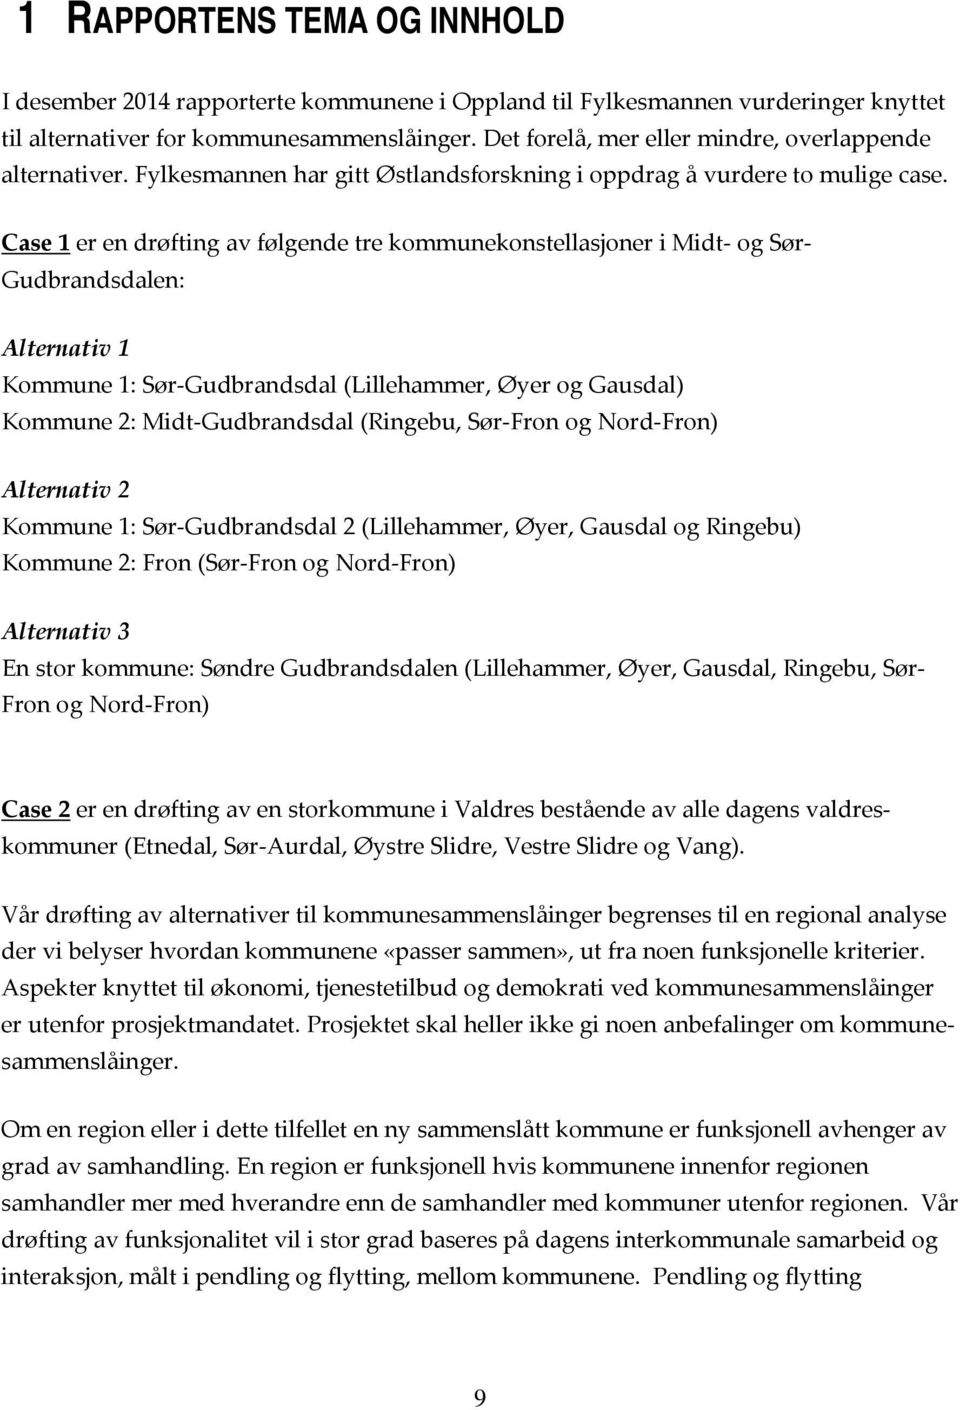 Case 1 er en drøfting av følgende tre kommunekonstellasjoner i Midt og Sør Gudbrandsdalen: Alternativ 1 Kommune 1: Sør Gudbrandsdal (Lillehammer, Øyer og Gausdal) Kommune 2: Midt Gudbrandsdal